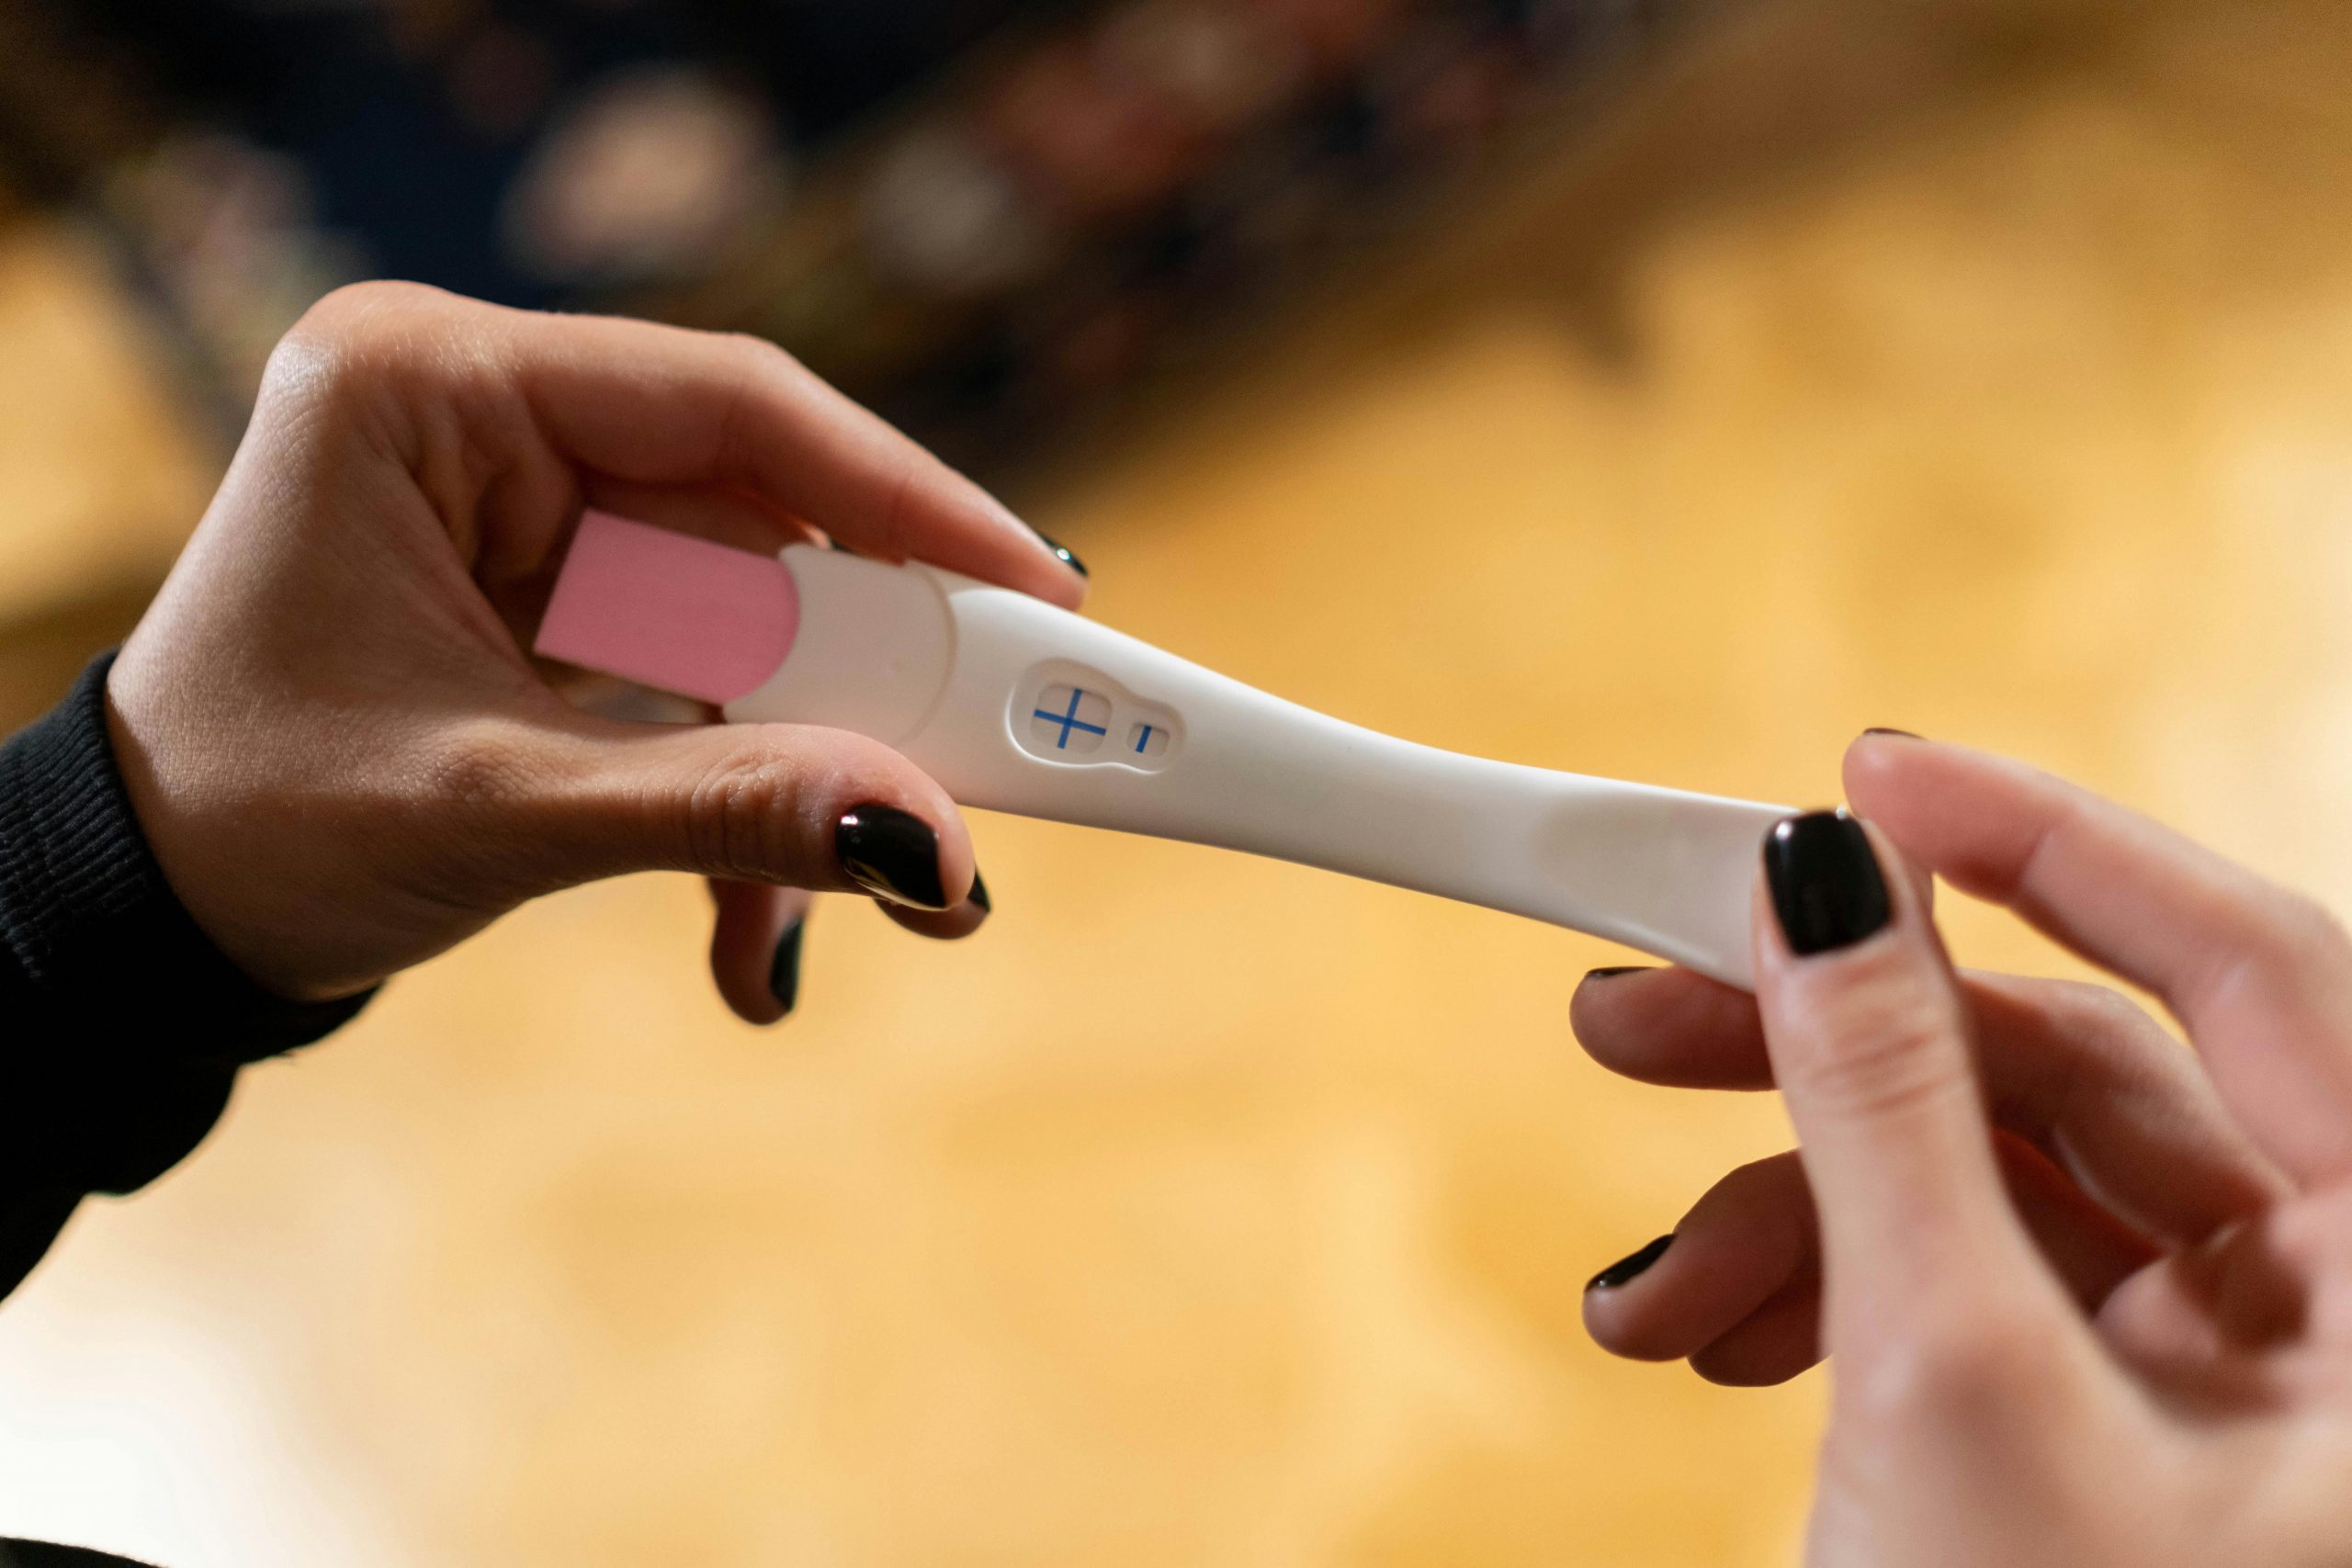 “Rejestr ciąż” nie zniknie. Ministerstwo nie zamierza wycofywać programu zbierania danych